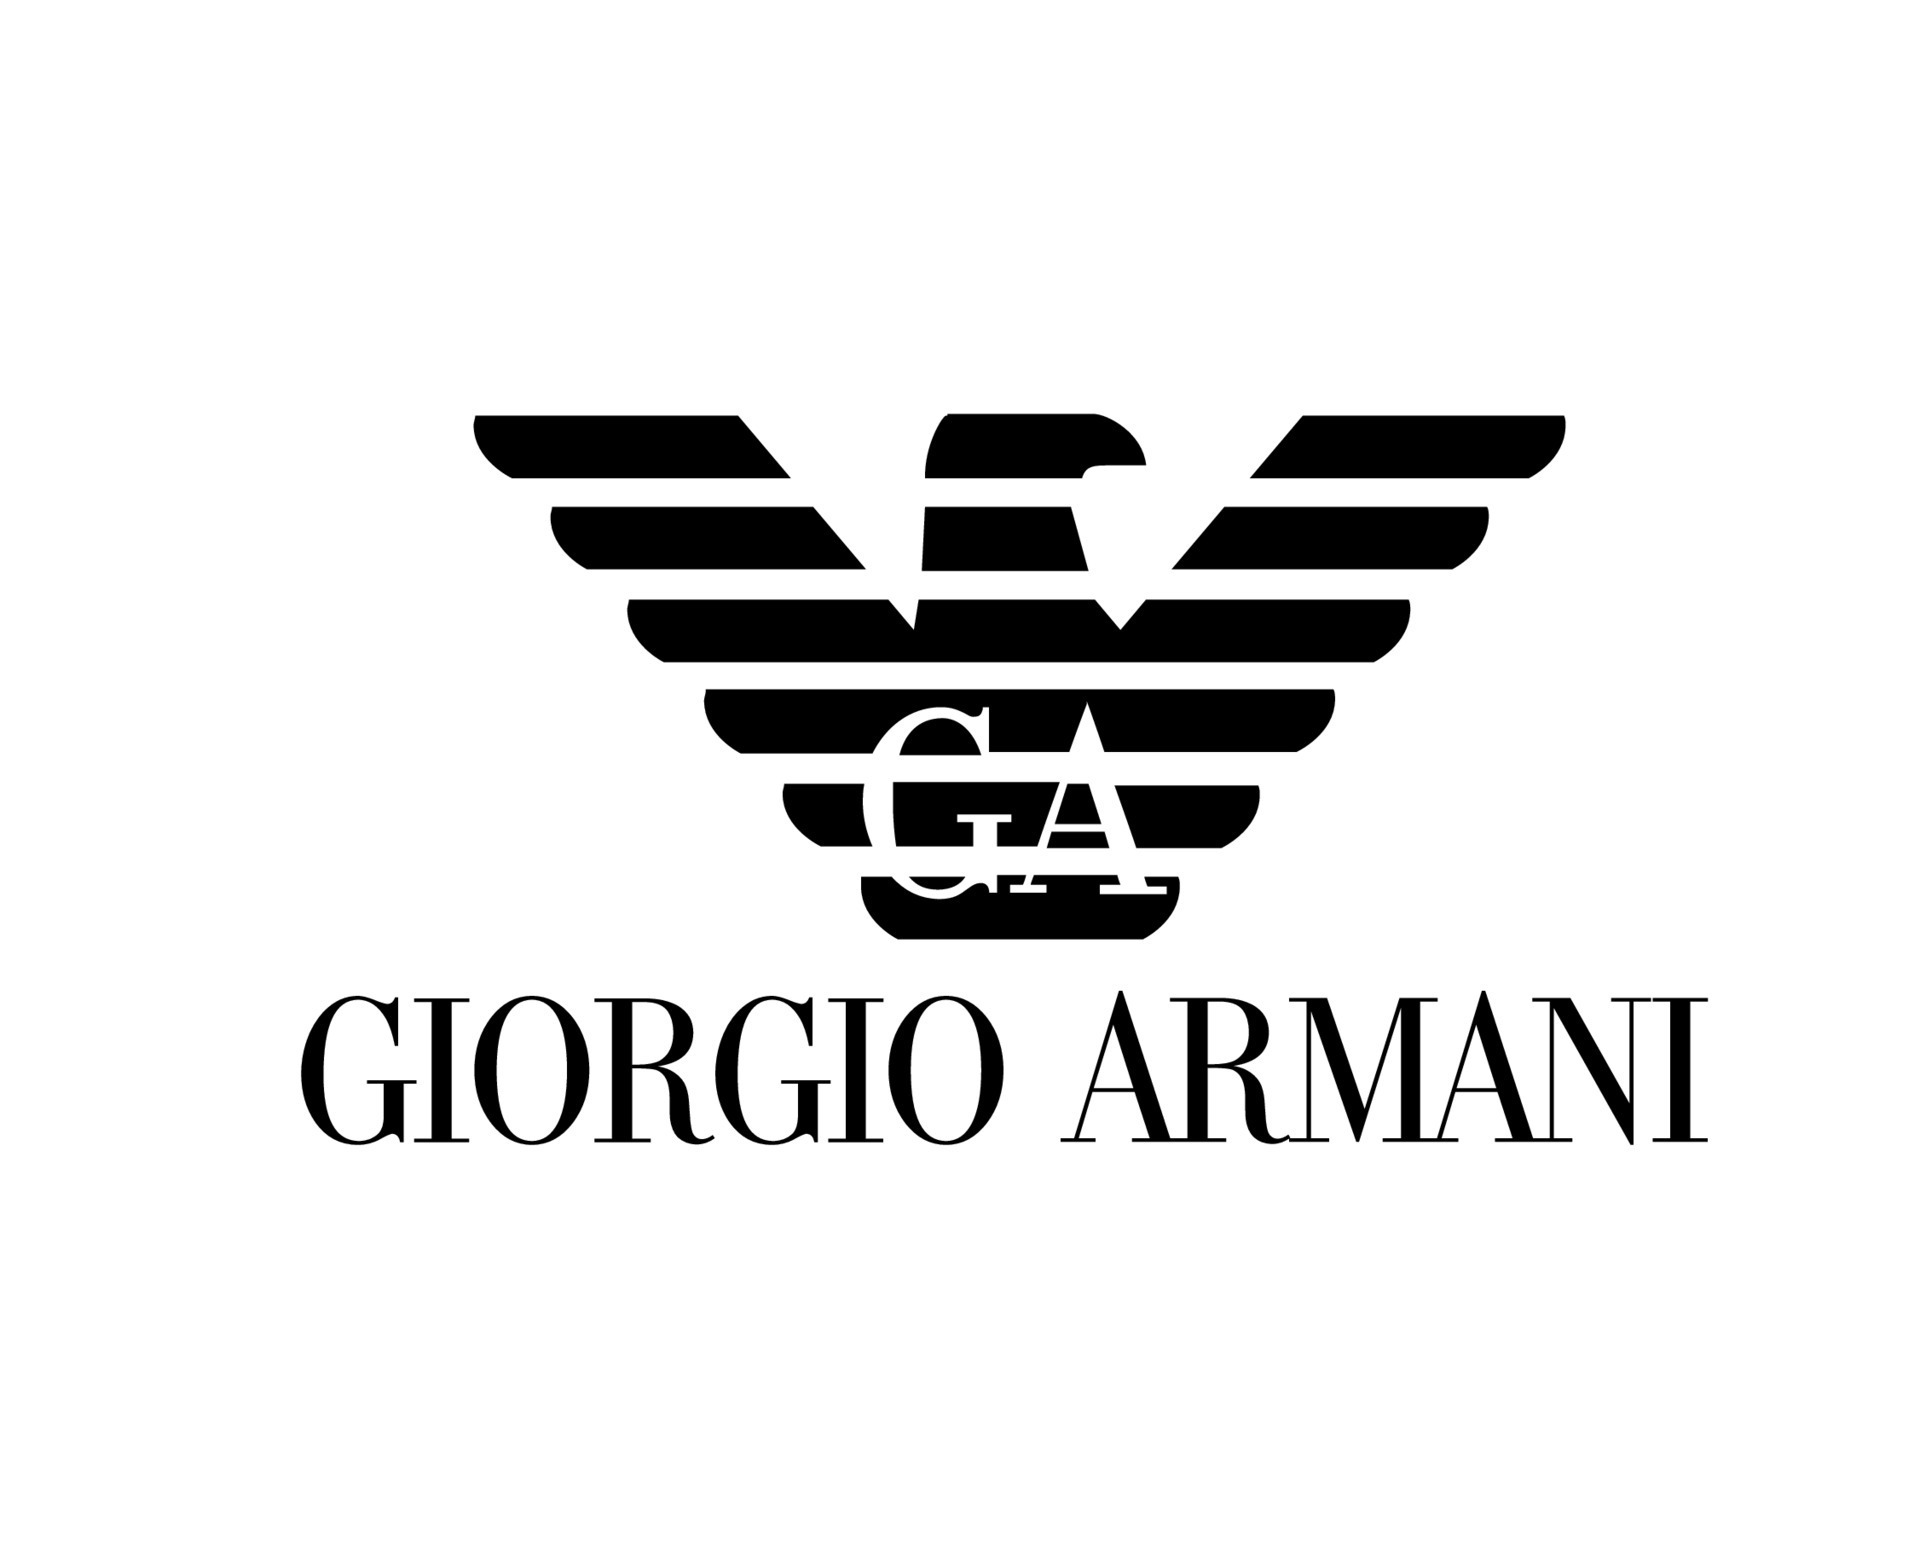 giorgio-armani-brand-logo-symbol-black-design-clothes-fashion-illustration-free-vector